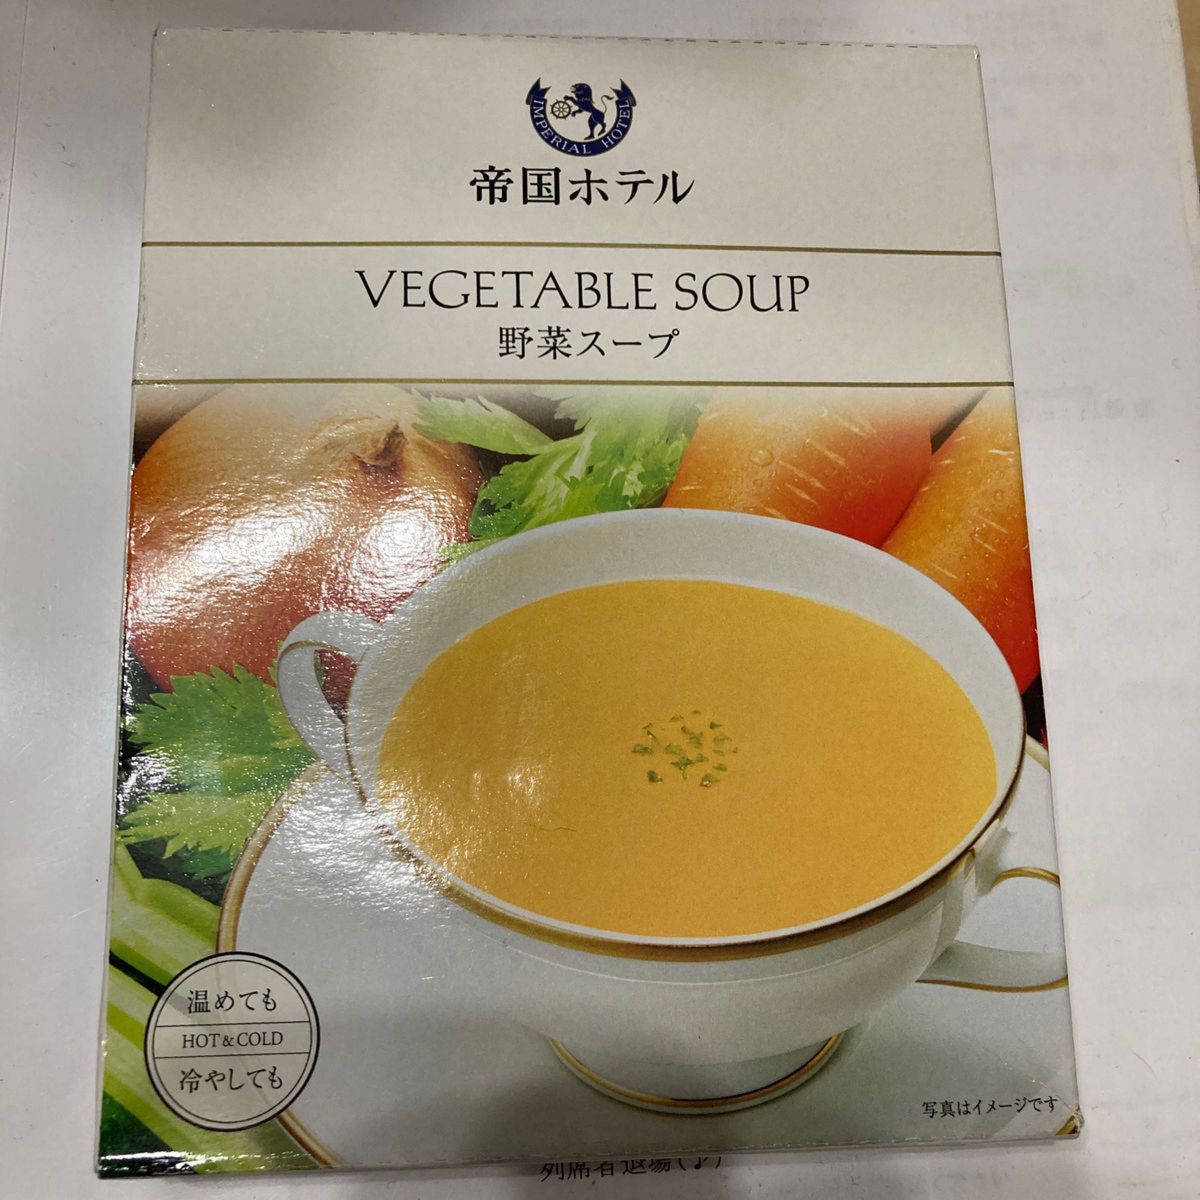 帝国ホテル 高級野菜スープ 150g